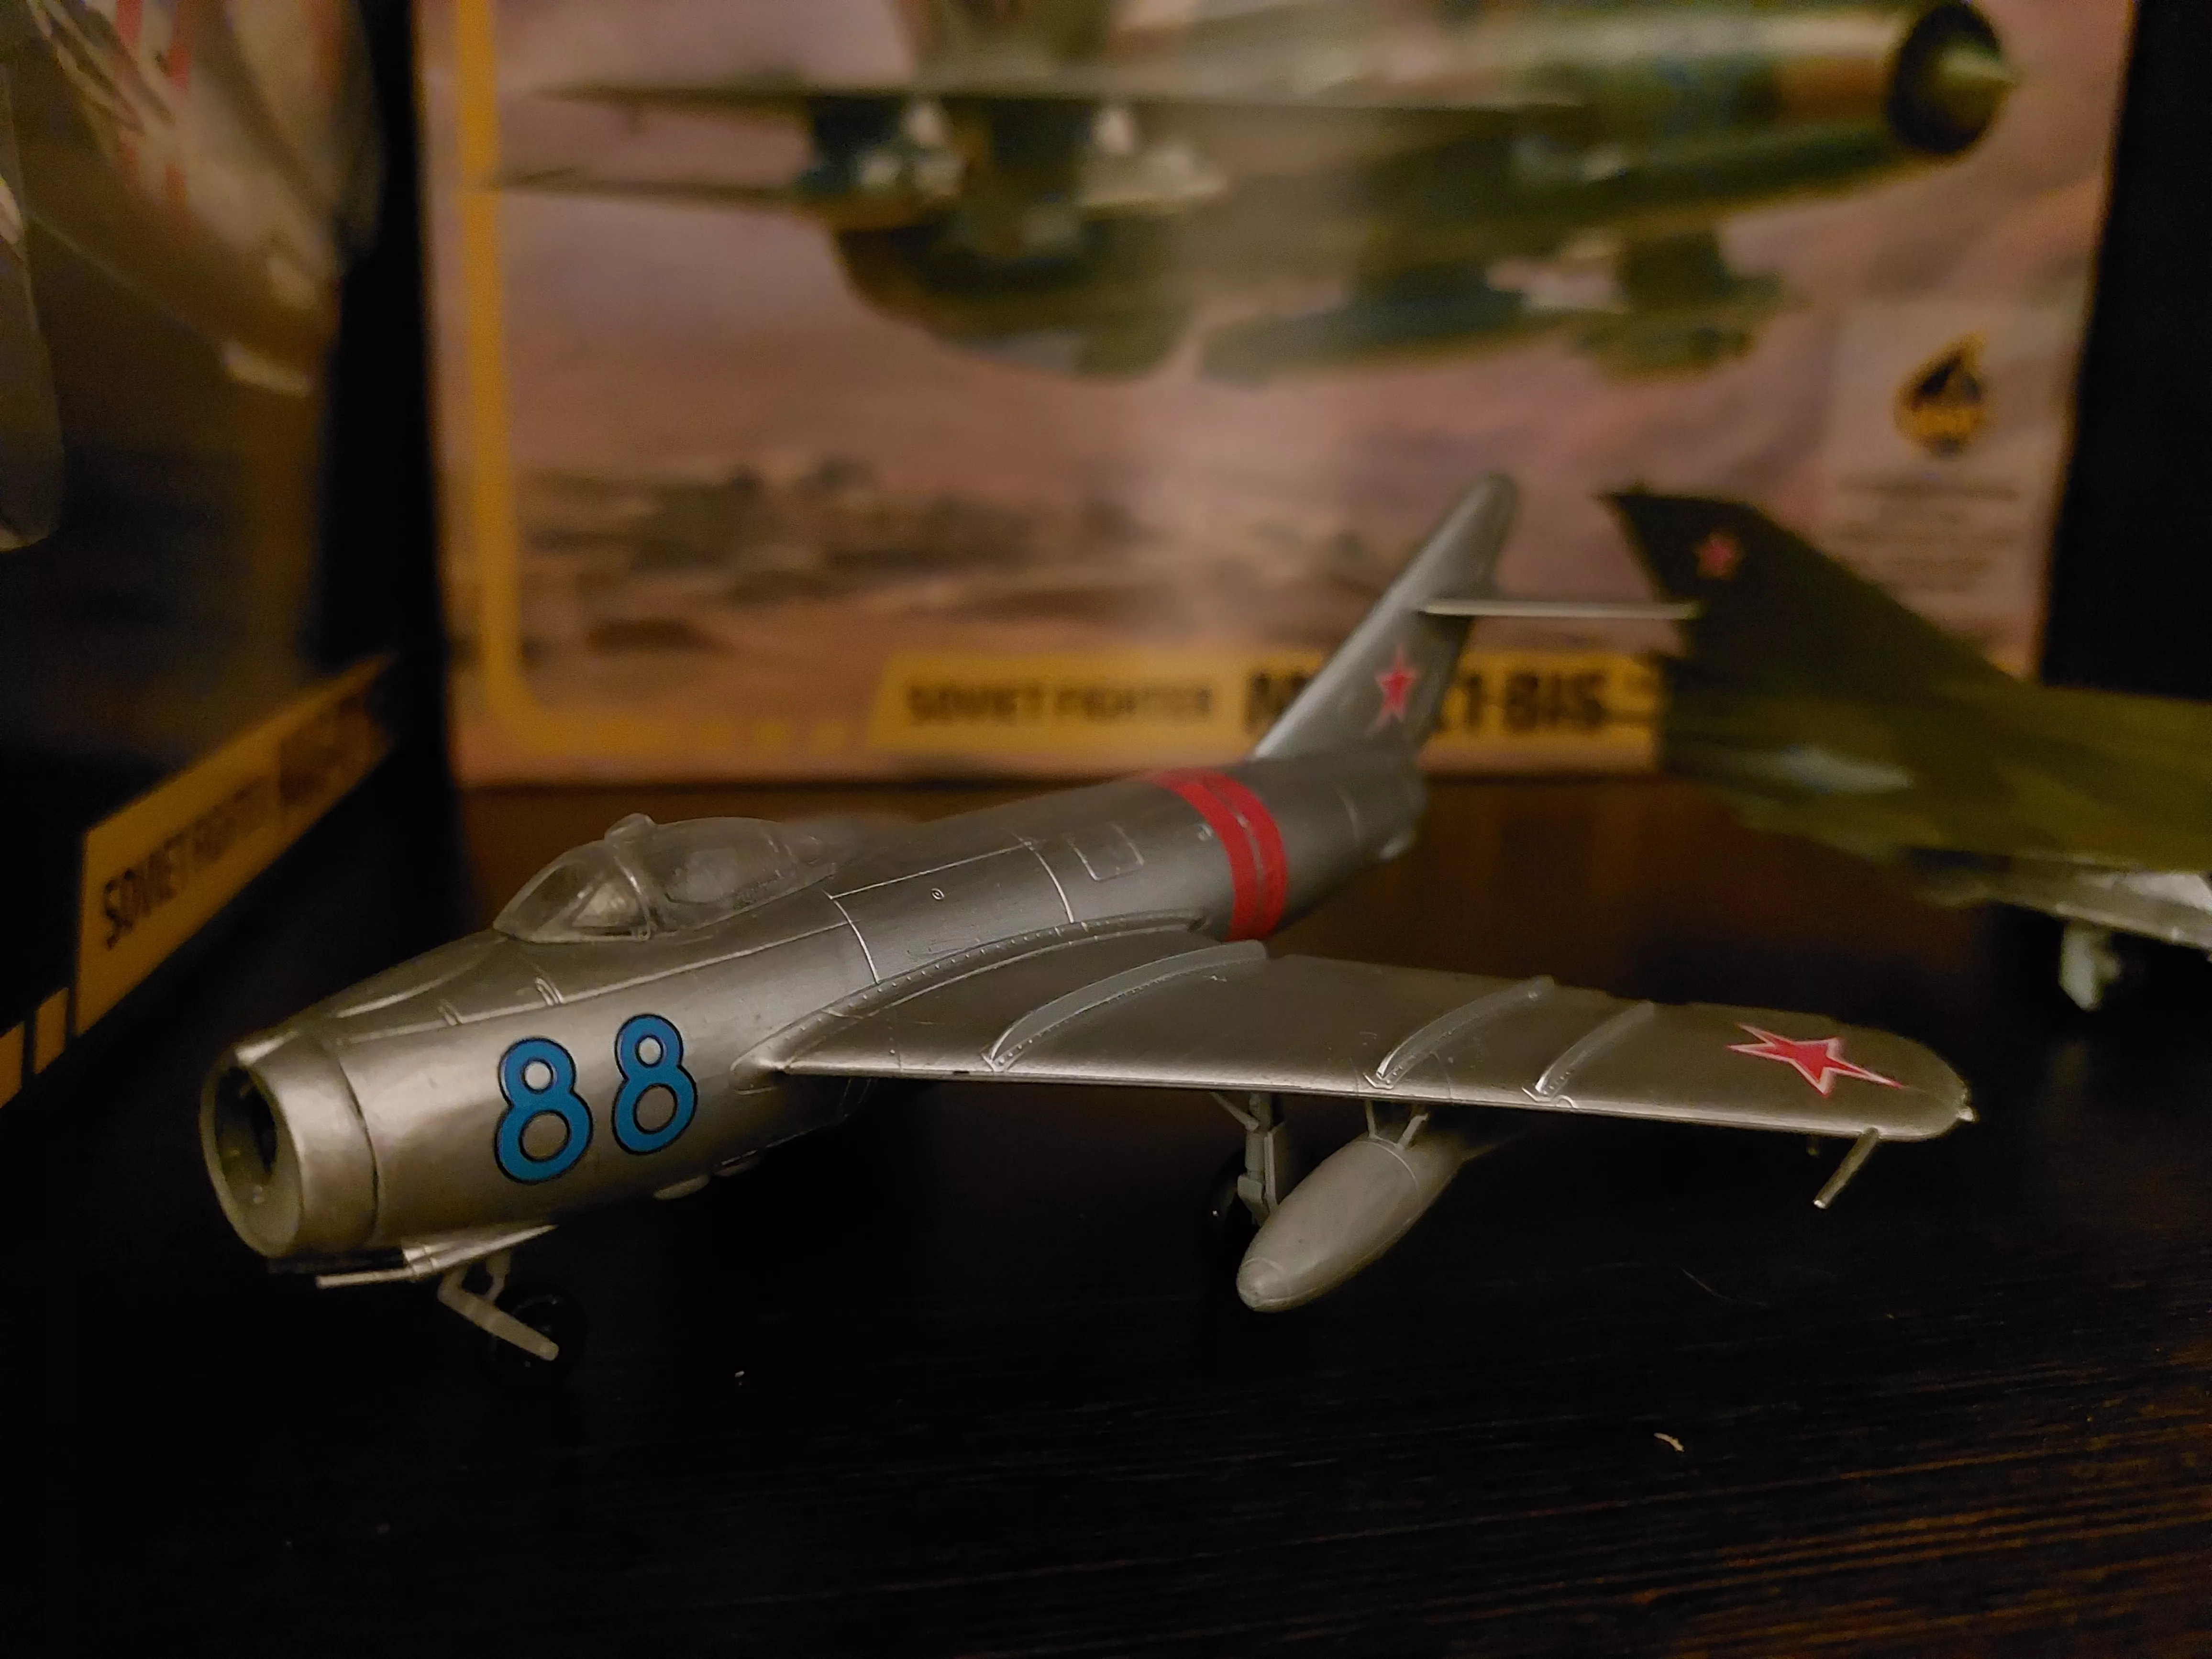 Советский истребитель Миг-17